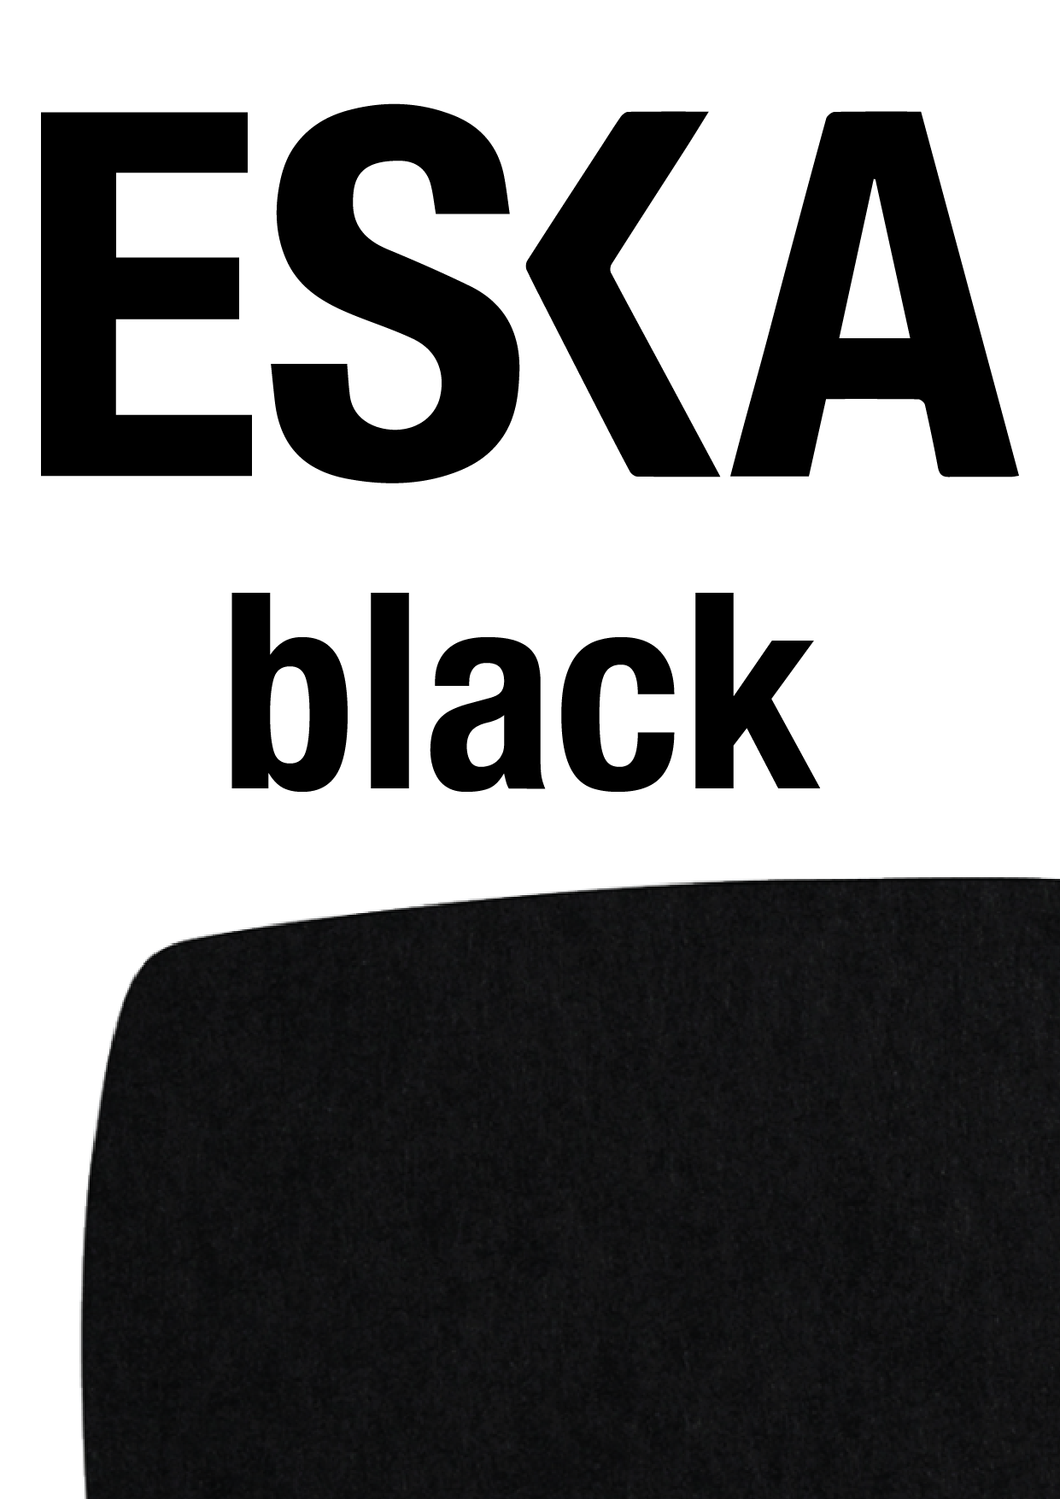 ESKA Black